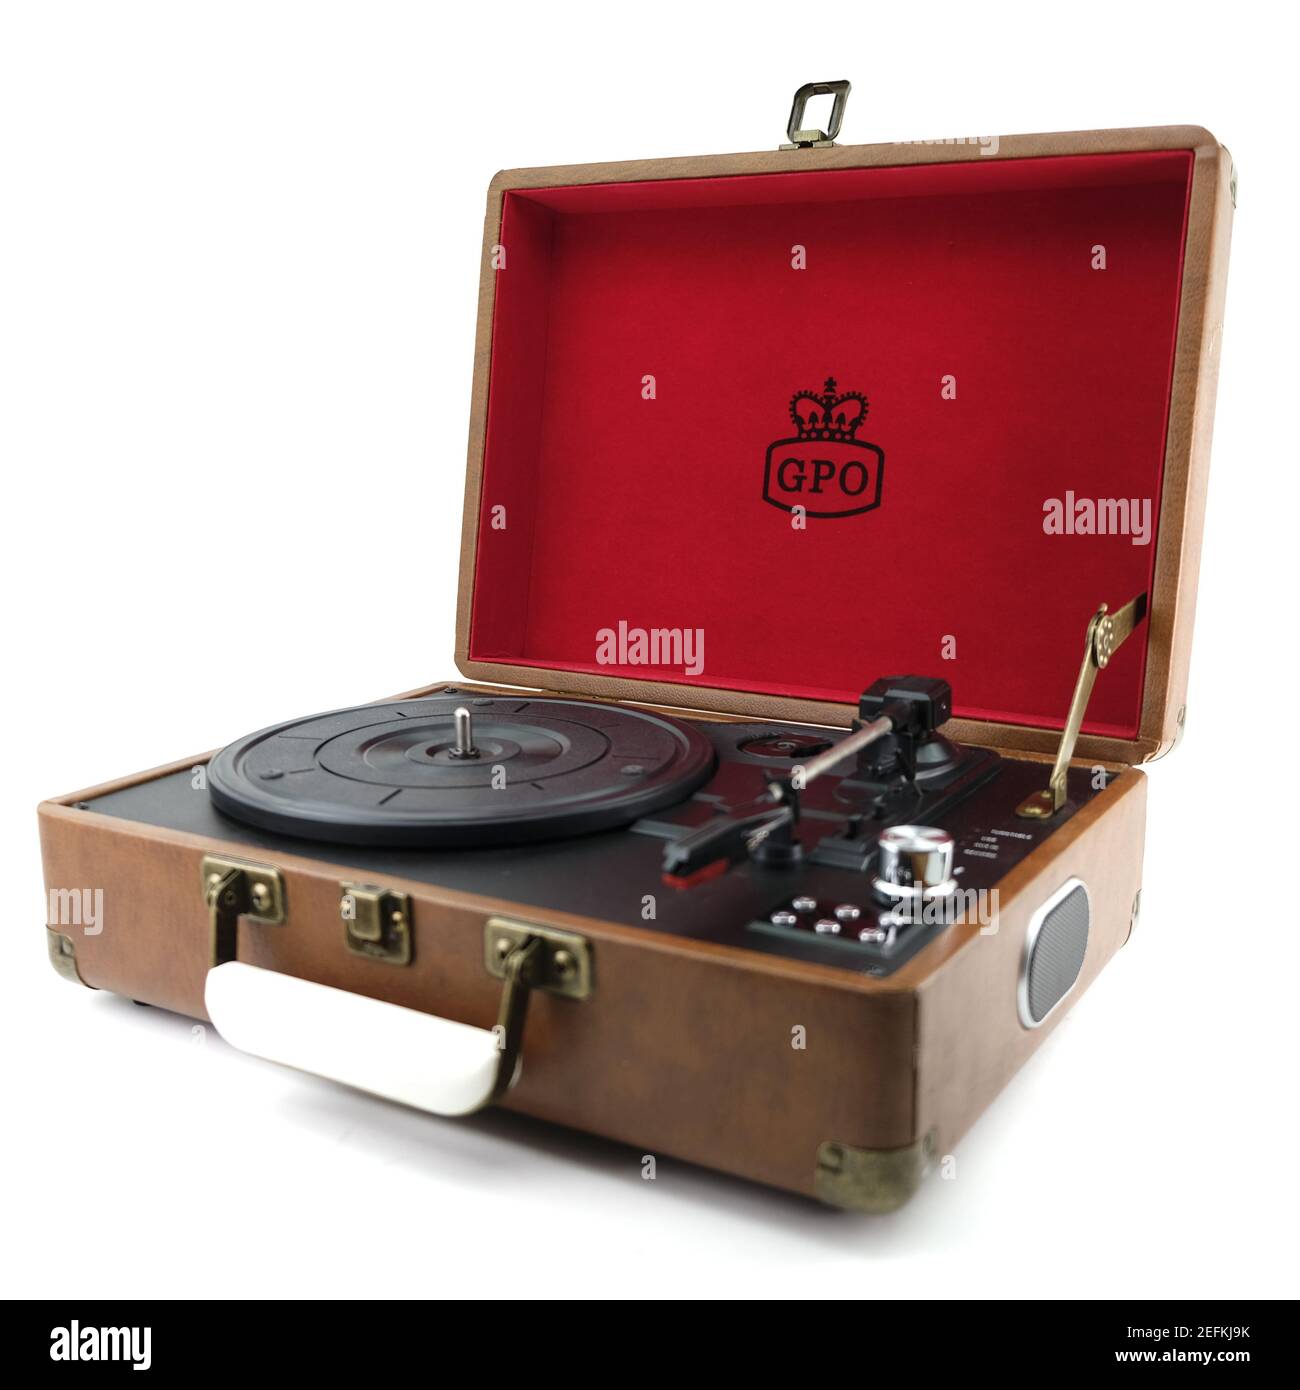 Style rétro GPO Attache style Briefcase Record Player 3-Speed portable Platine en vinyle avec haut-parleurs intégrés sur fond blanc Banque D'Images